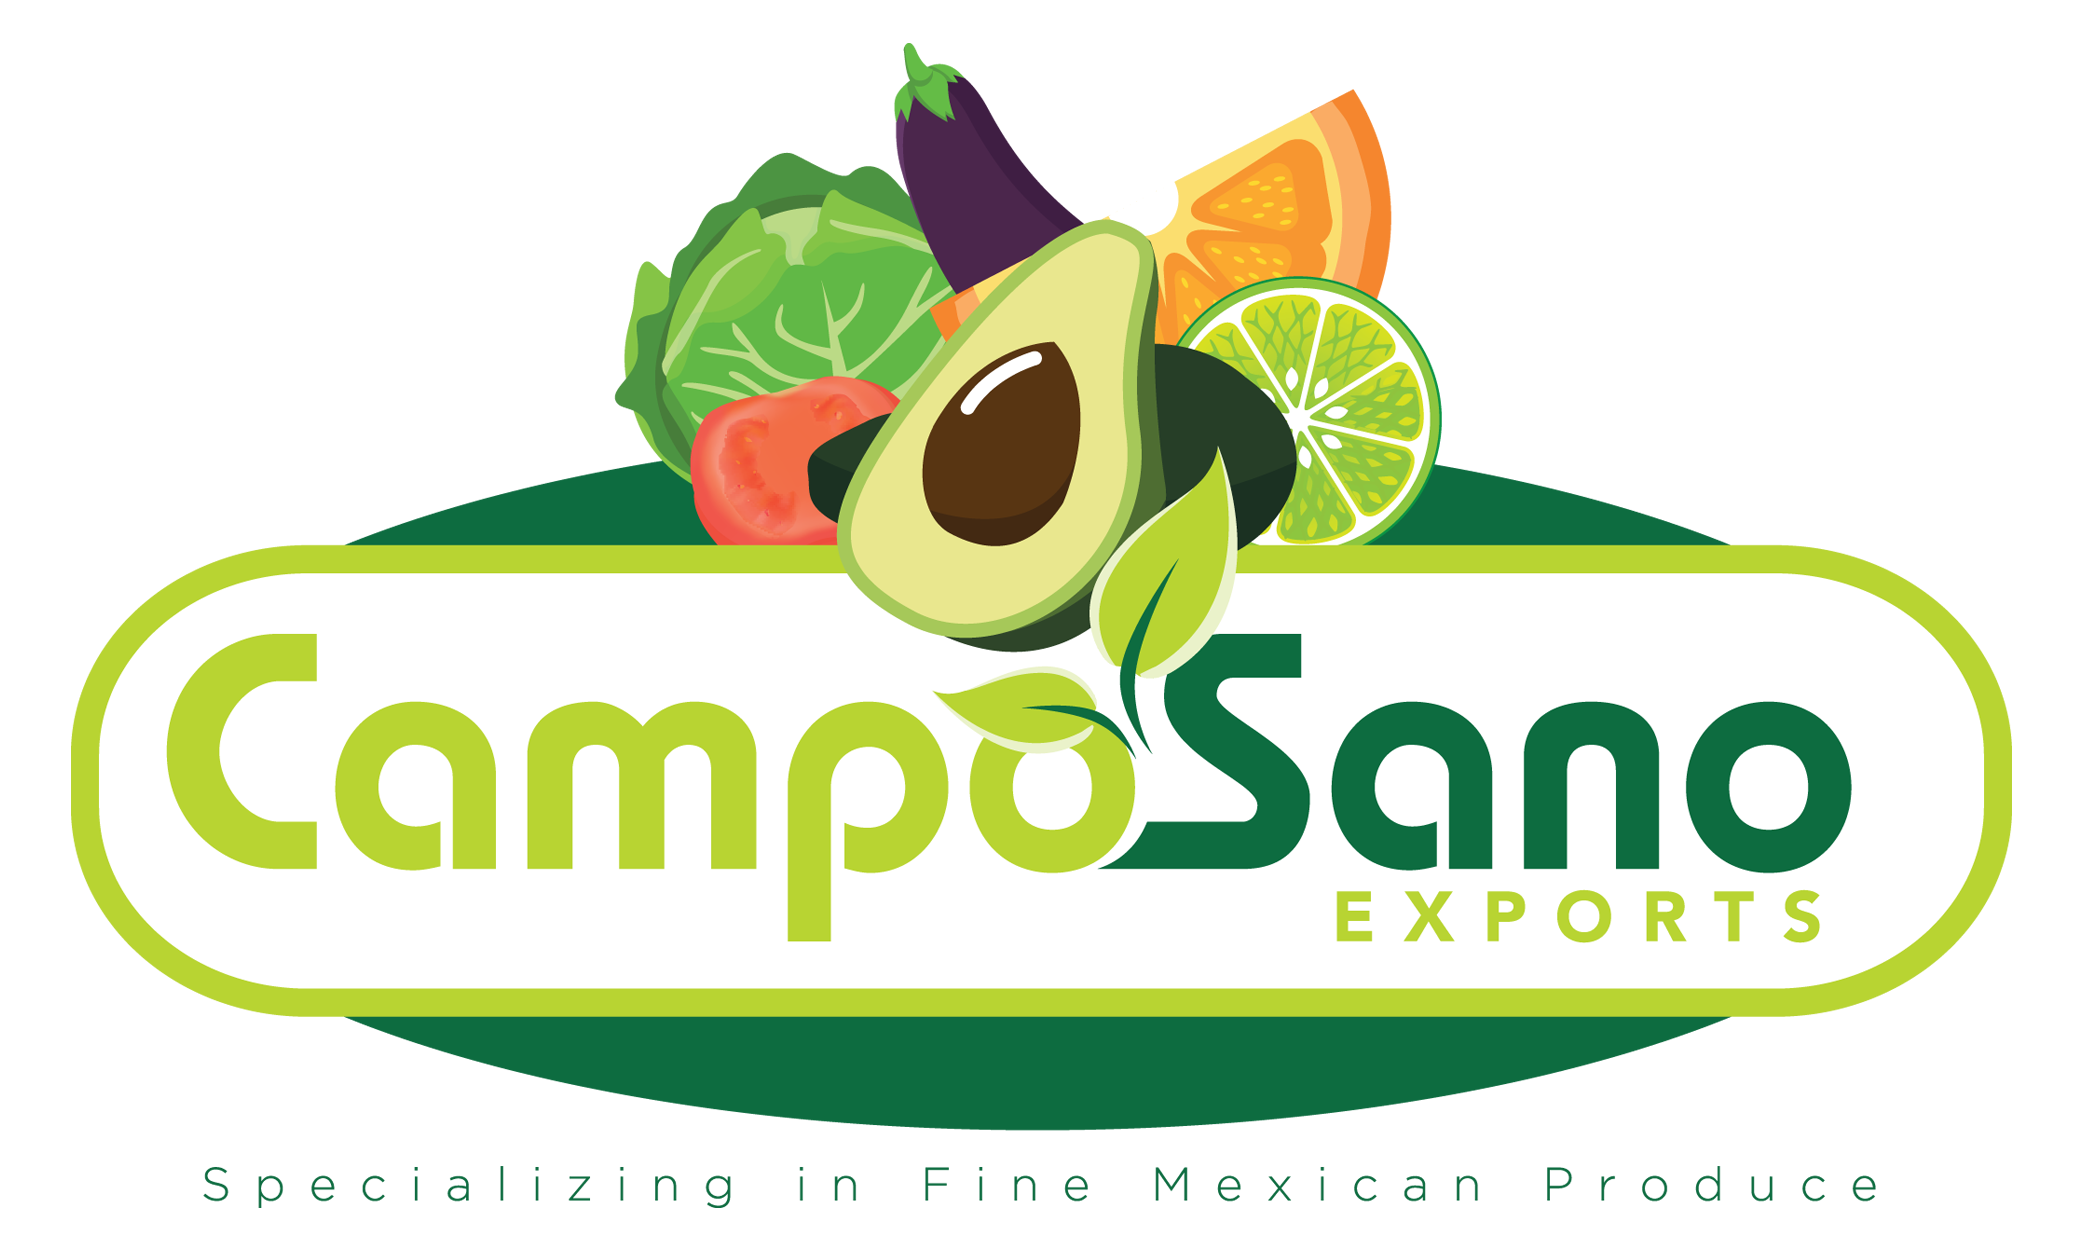 Camposano Exports